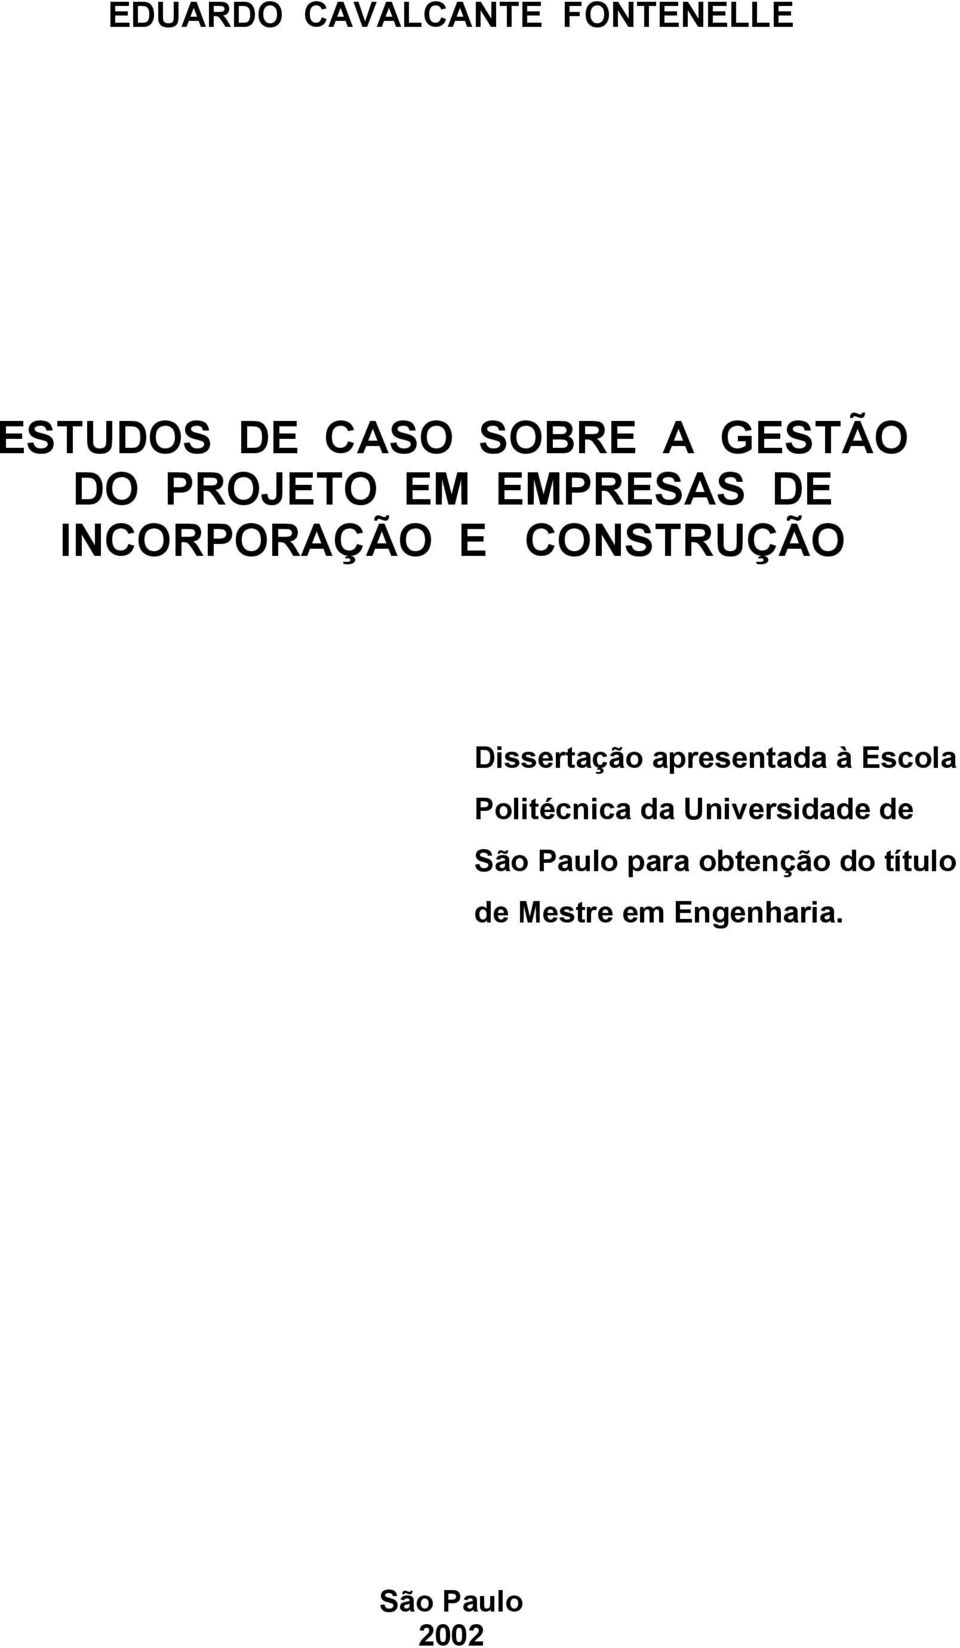 Dissertação apresentada à Escola Politécnica da Universidade